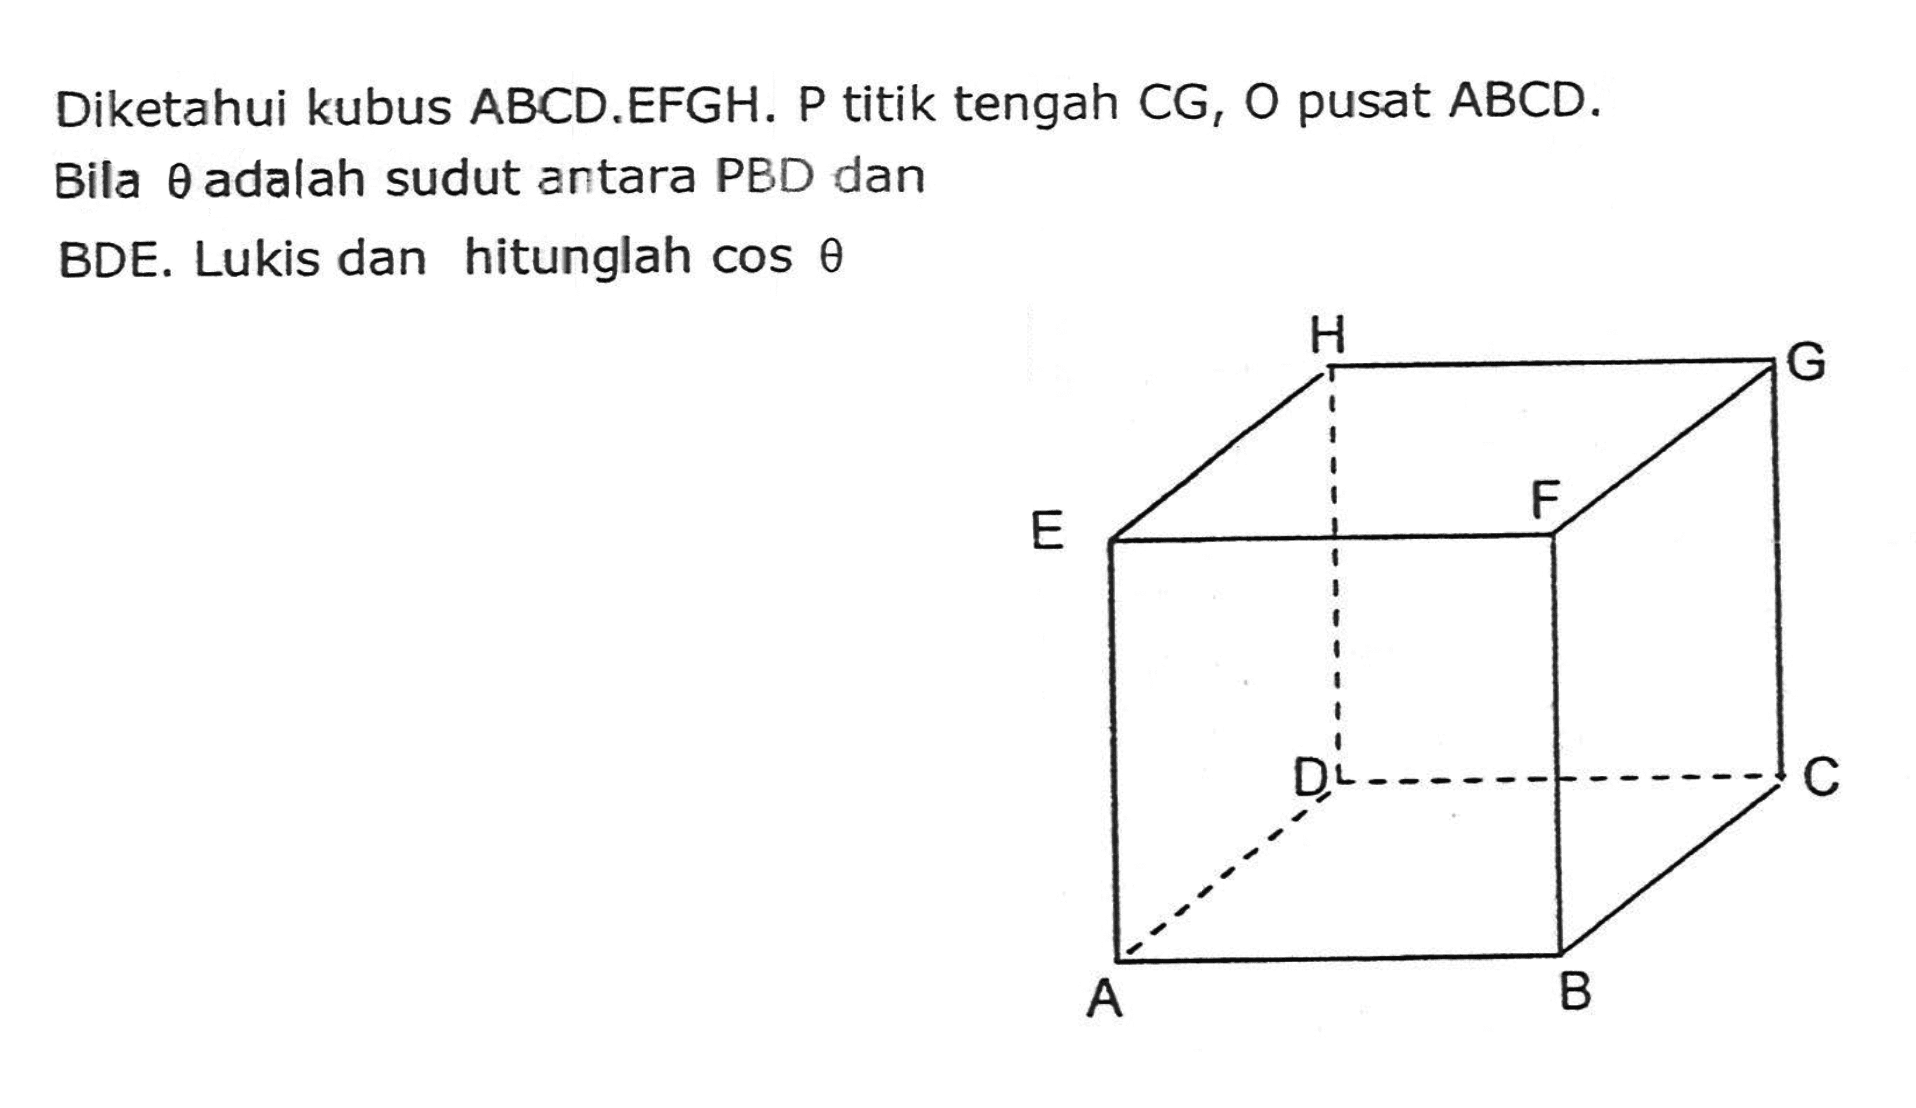 Diketahui kubus ABCD.EFGH. P titik tengah CG, O pusat ABCD. Bila theta adalah sudut antara PBD dan BDE. Lukis dan hitunglah cos theta H G E F D C A B